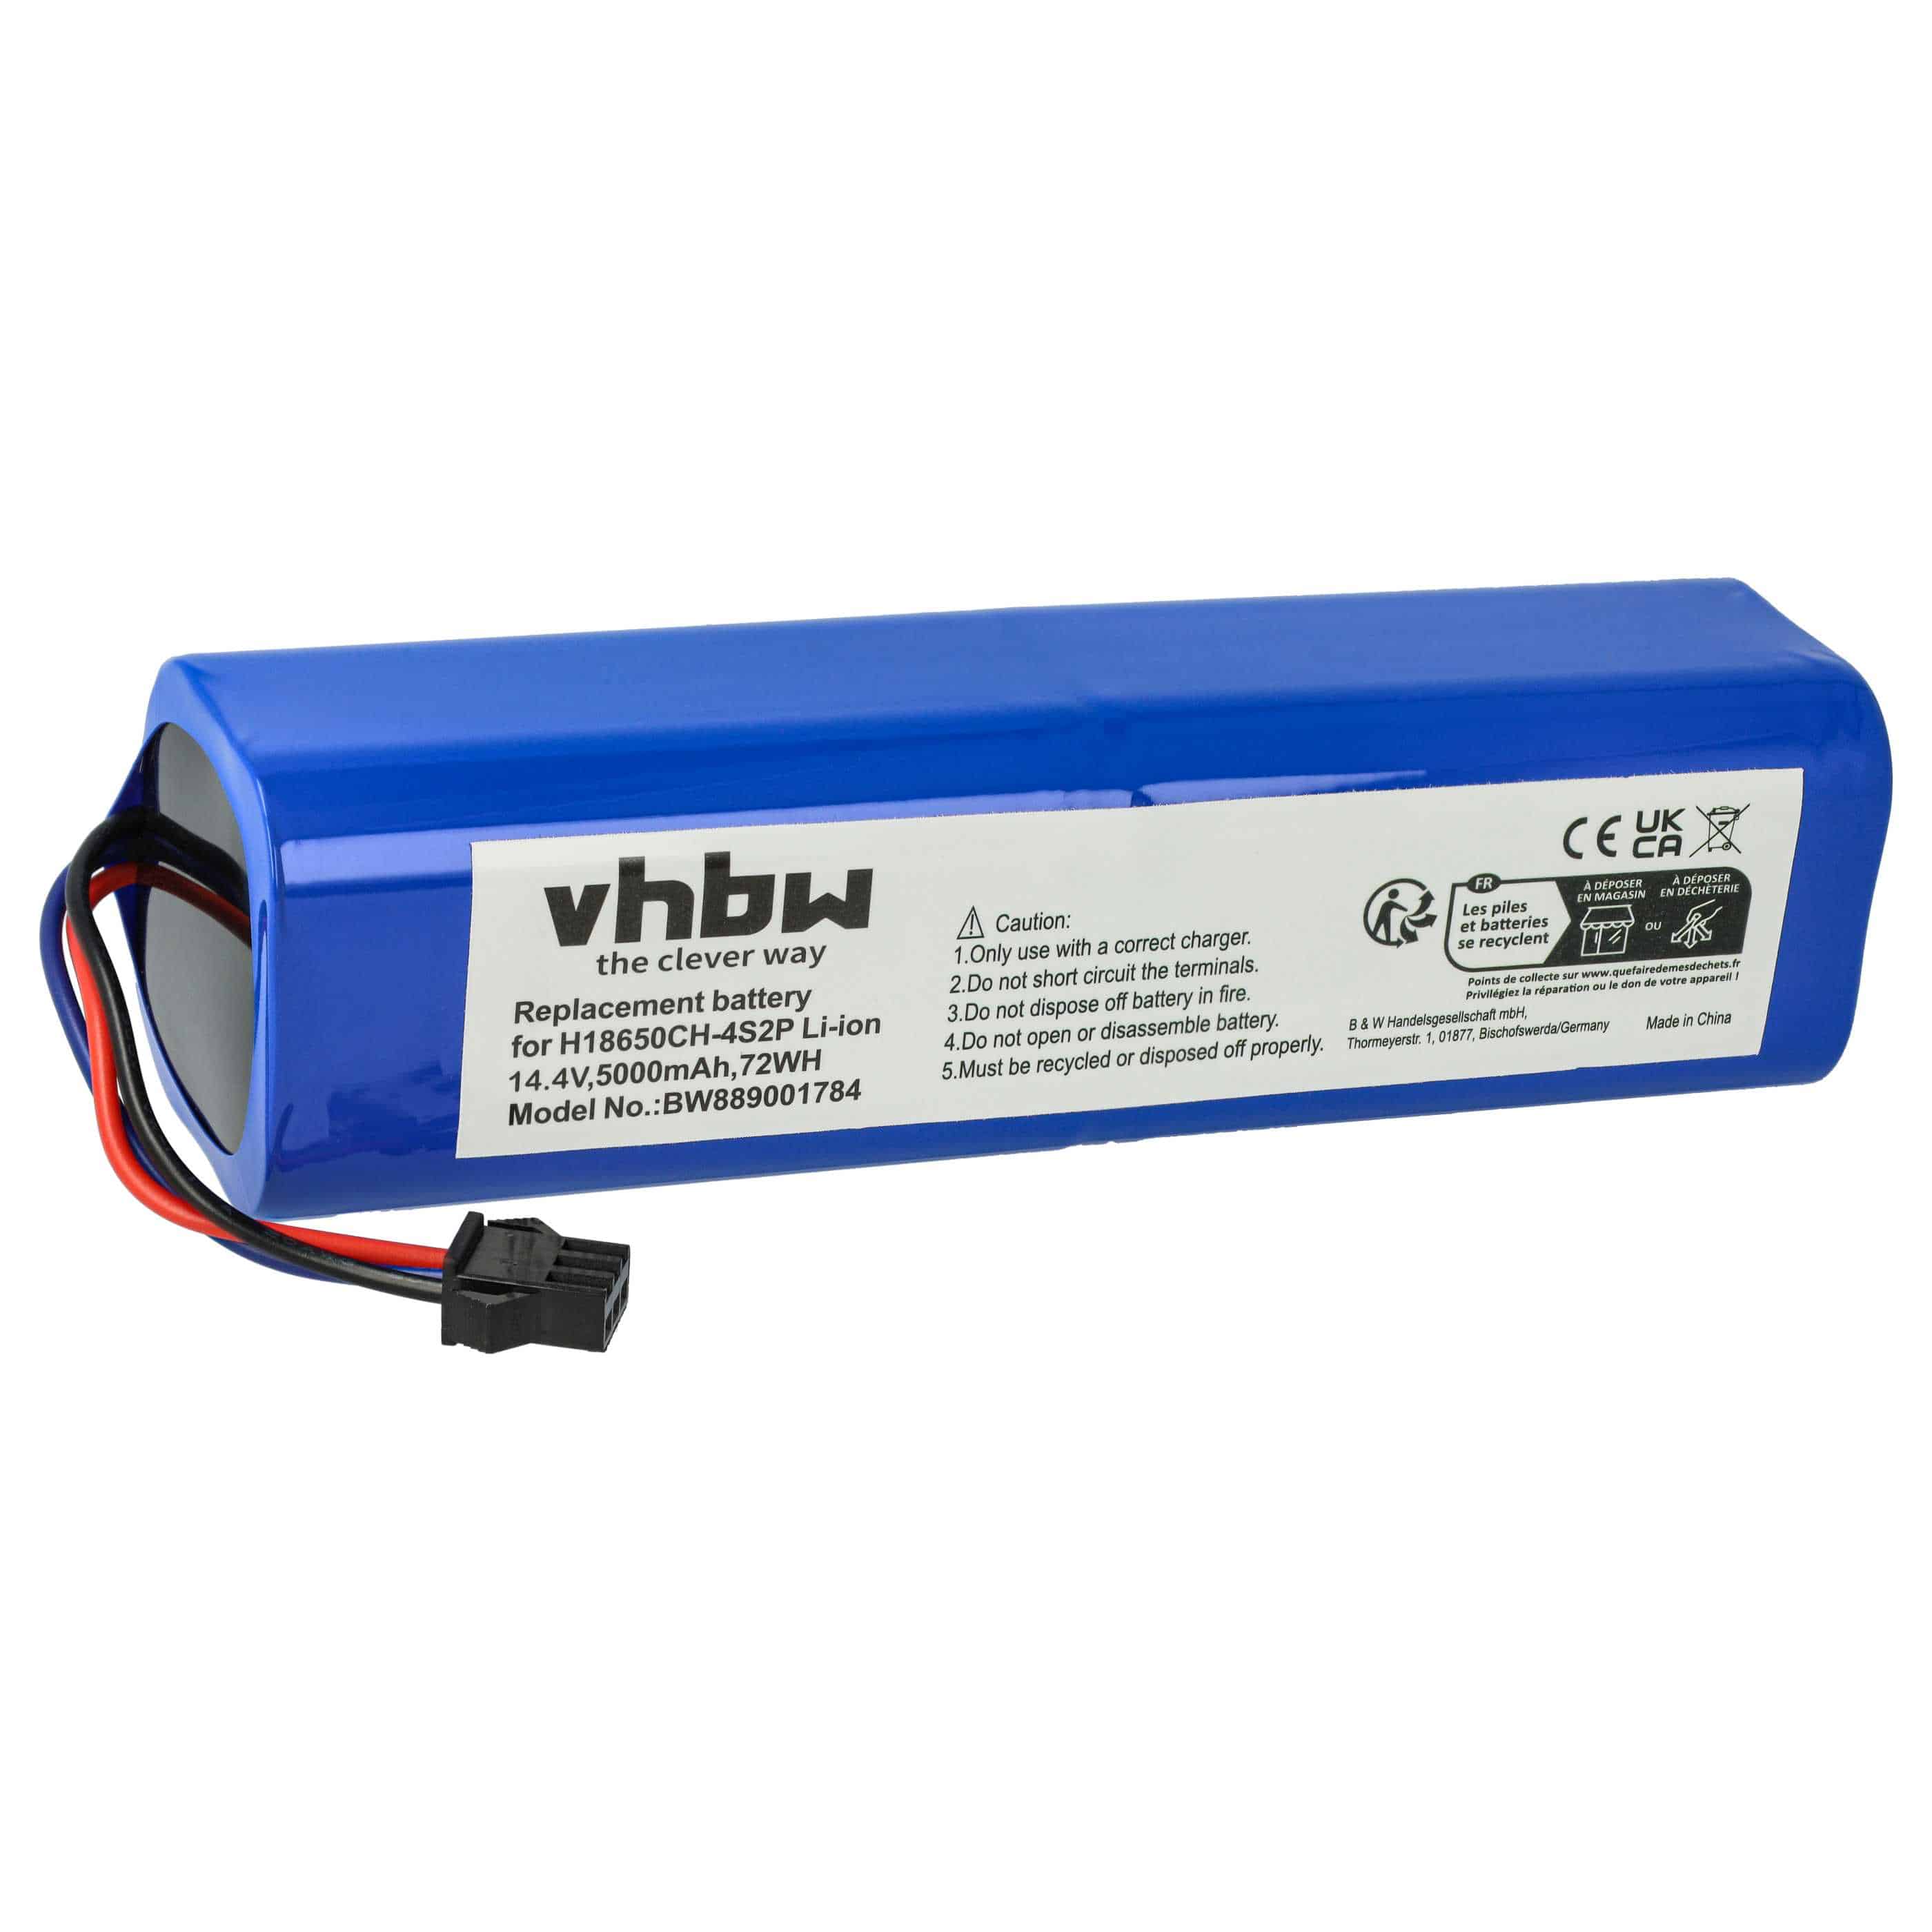 Batterie remplace Proscenic NR18650 M26-4S2P, H18650CH-4S2P pour robot aspirateur - 5000mAh 14,4V Li-ion